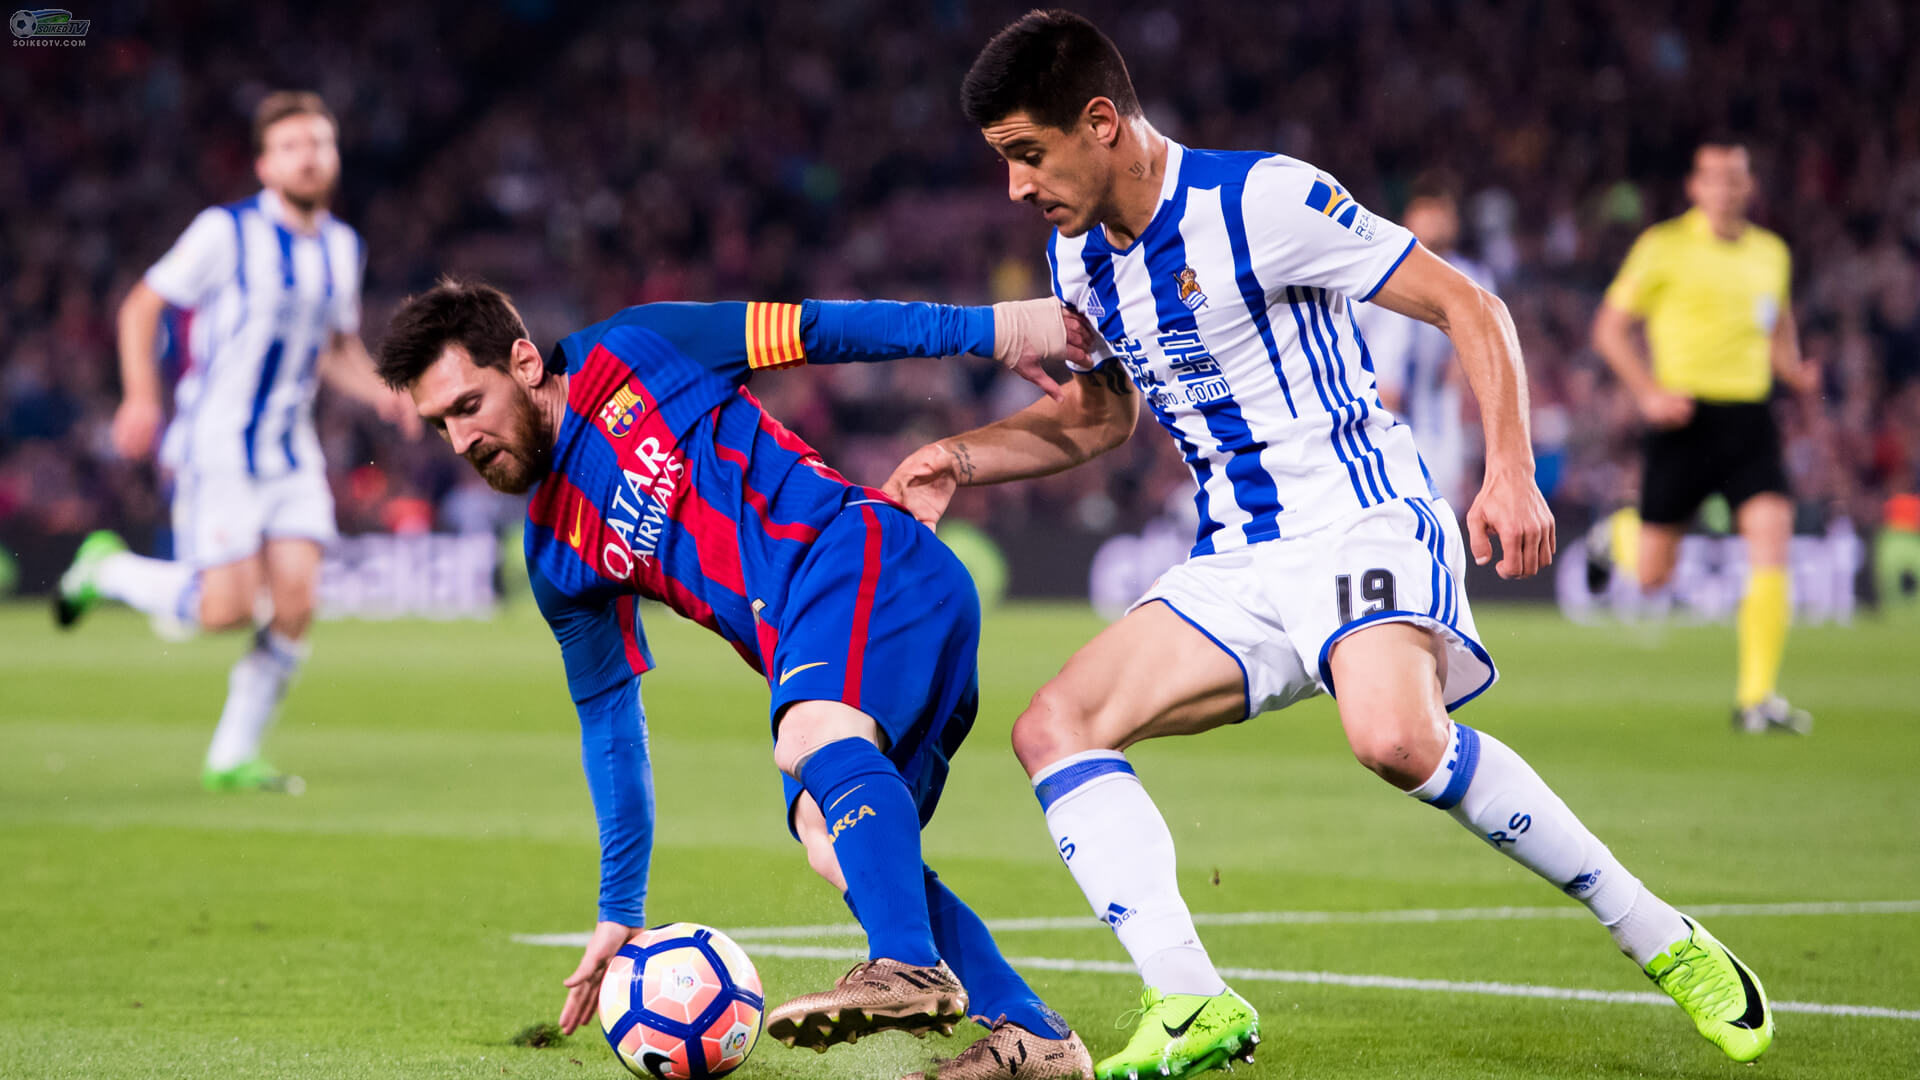 Thứ bóng đá hiệu quả của Barca “giết chết” La Real